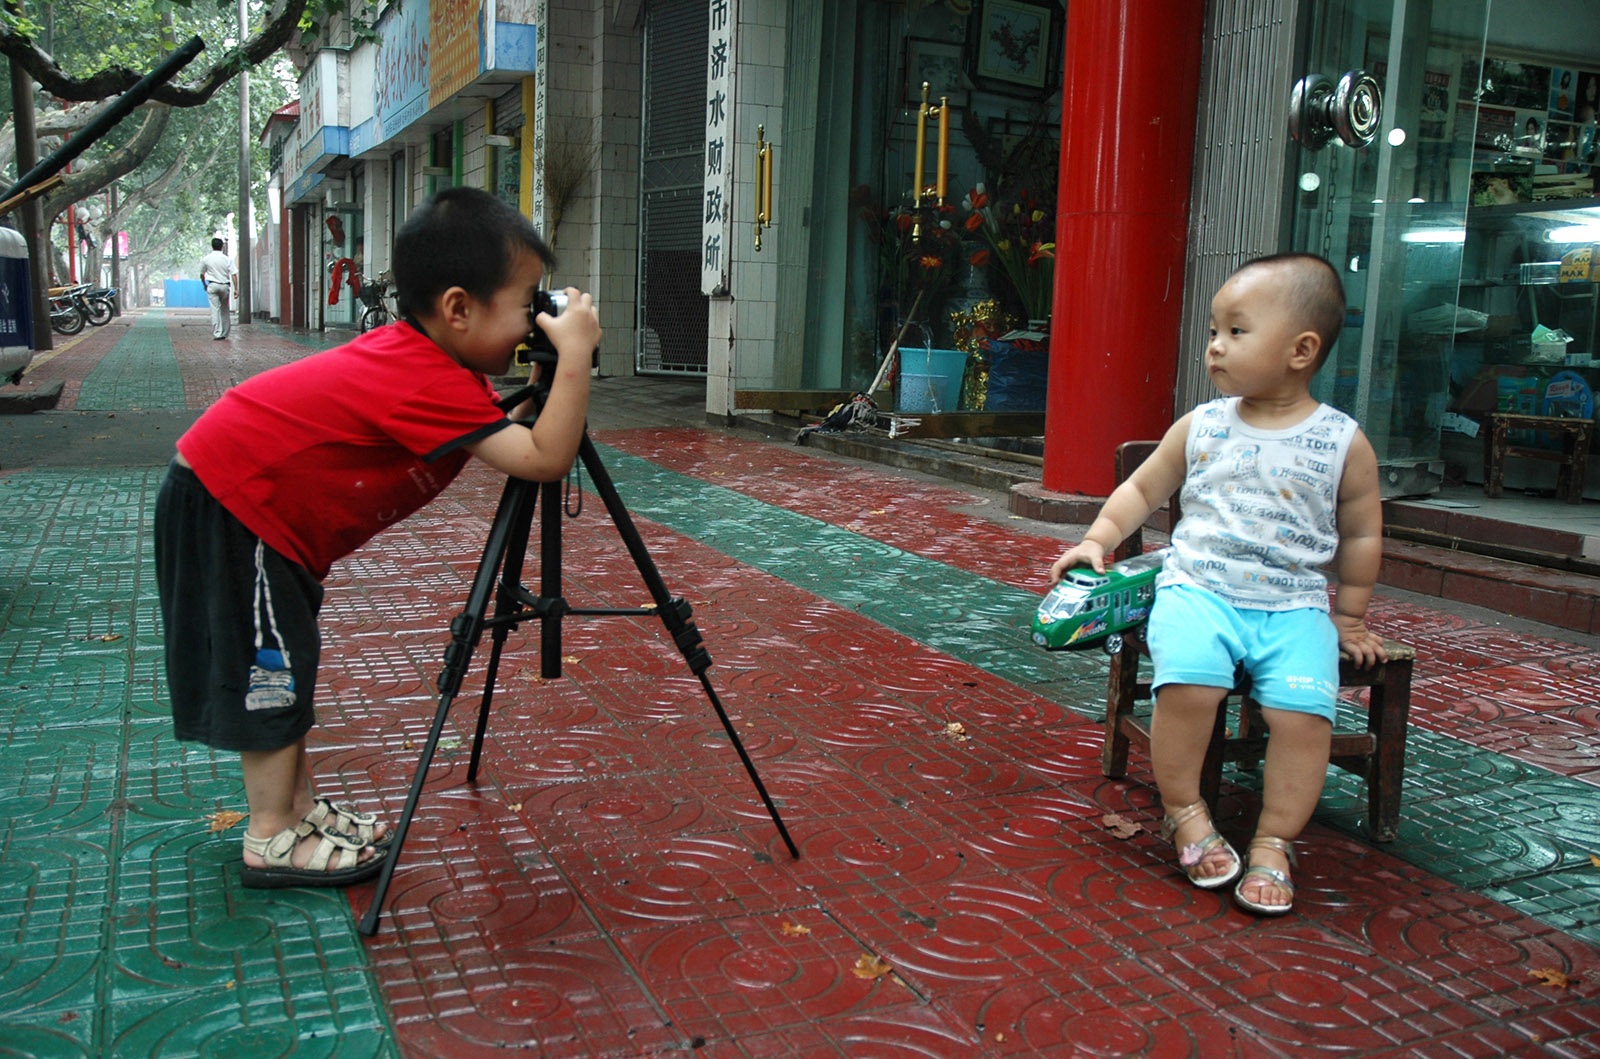 楊錦洋(高中組)河南《笑一笑》 弟弟拿著爸爸送的相機有模有樣的給小朋友拍照。搜索復制